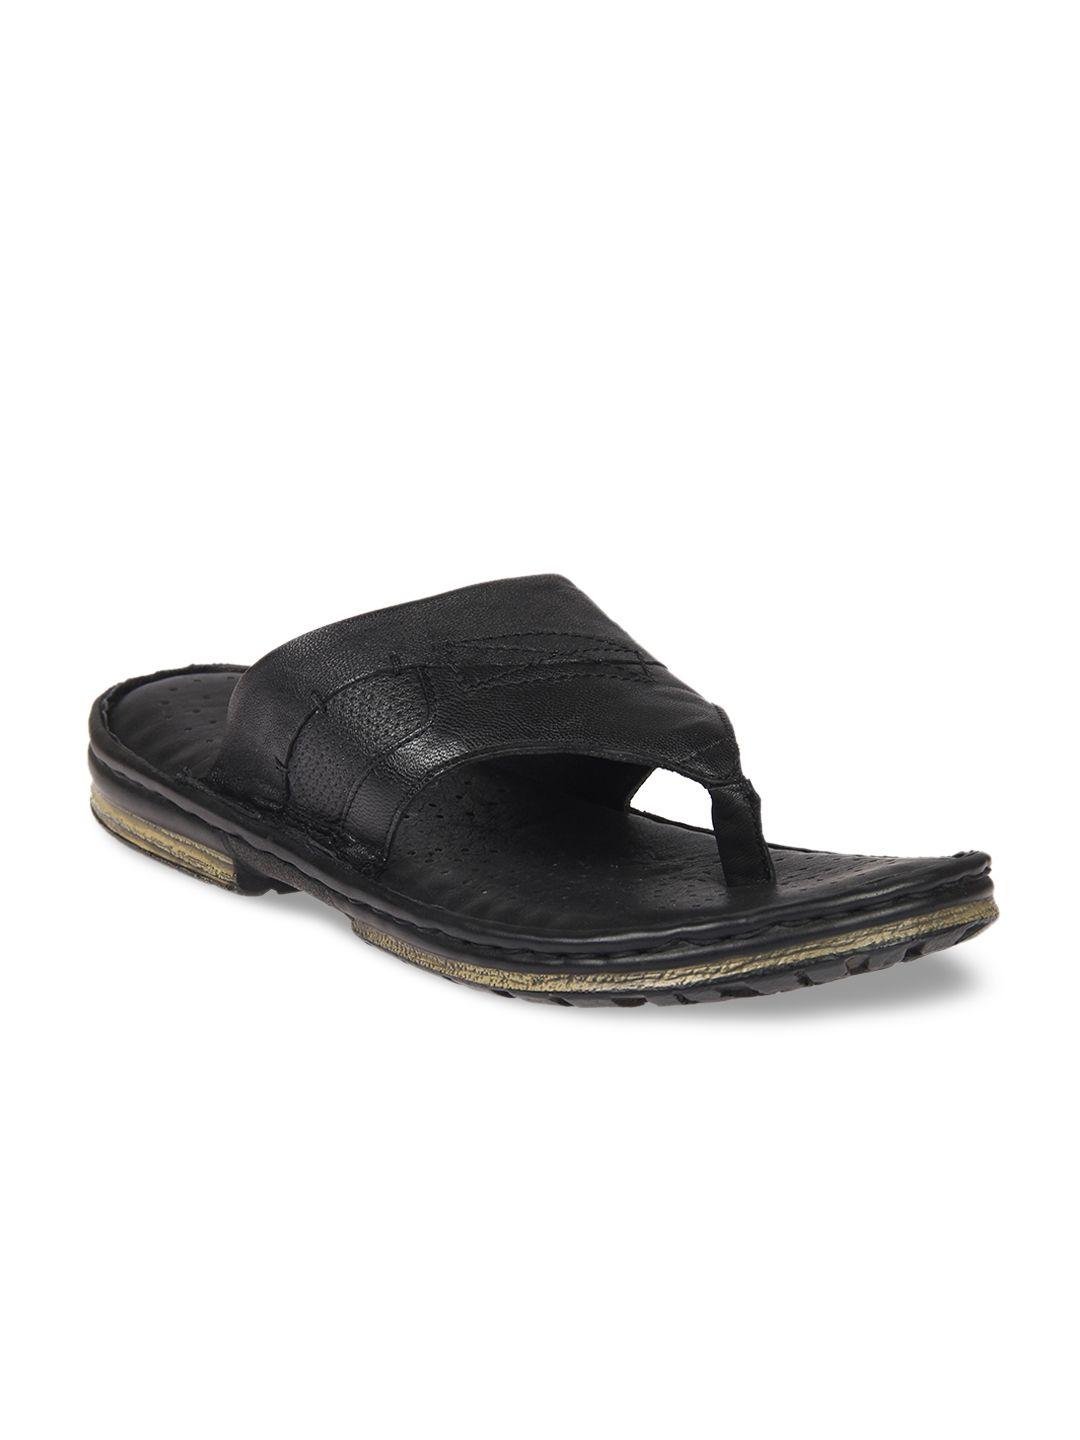 Franco Leone Men Black Comfort Leather Sandals